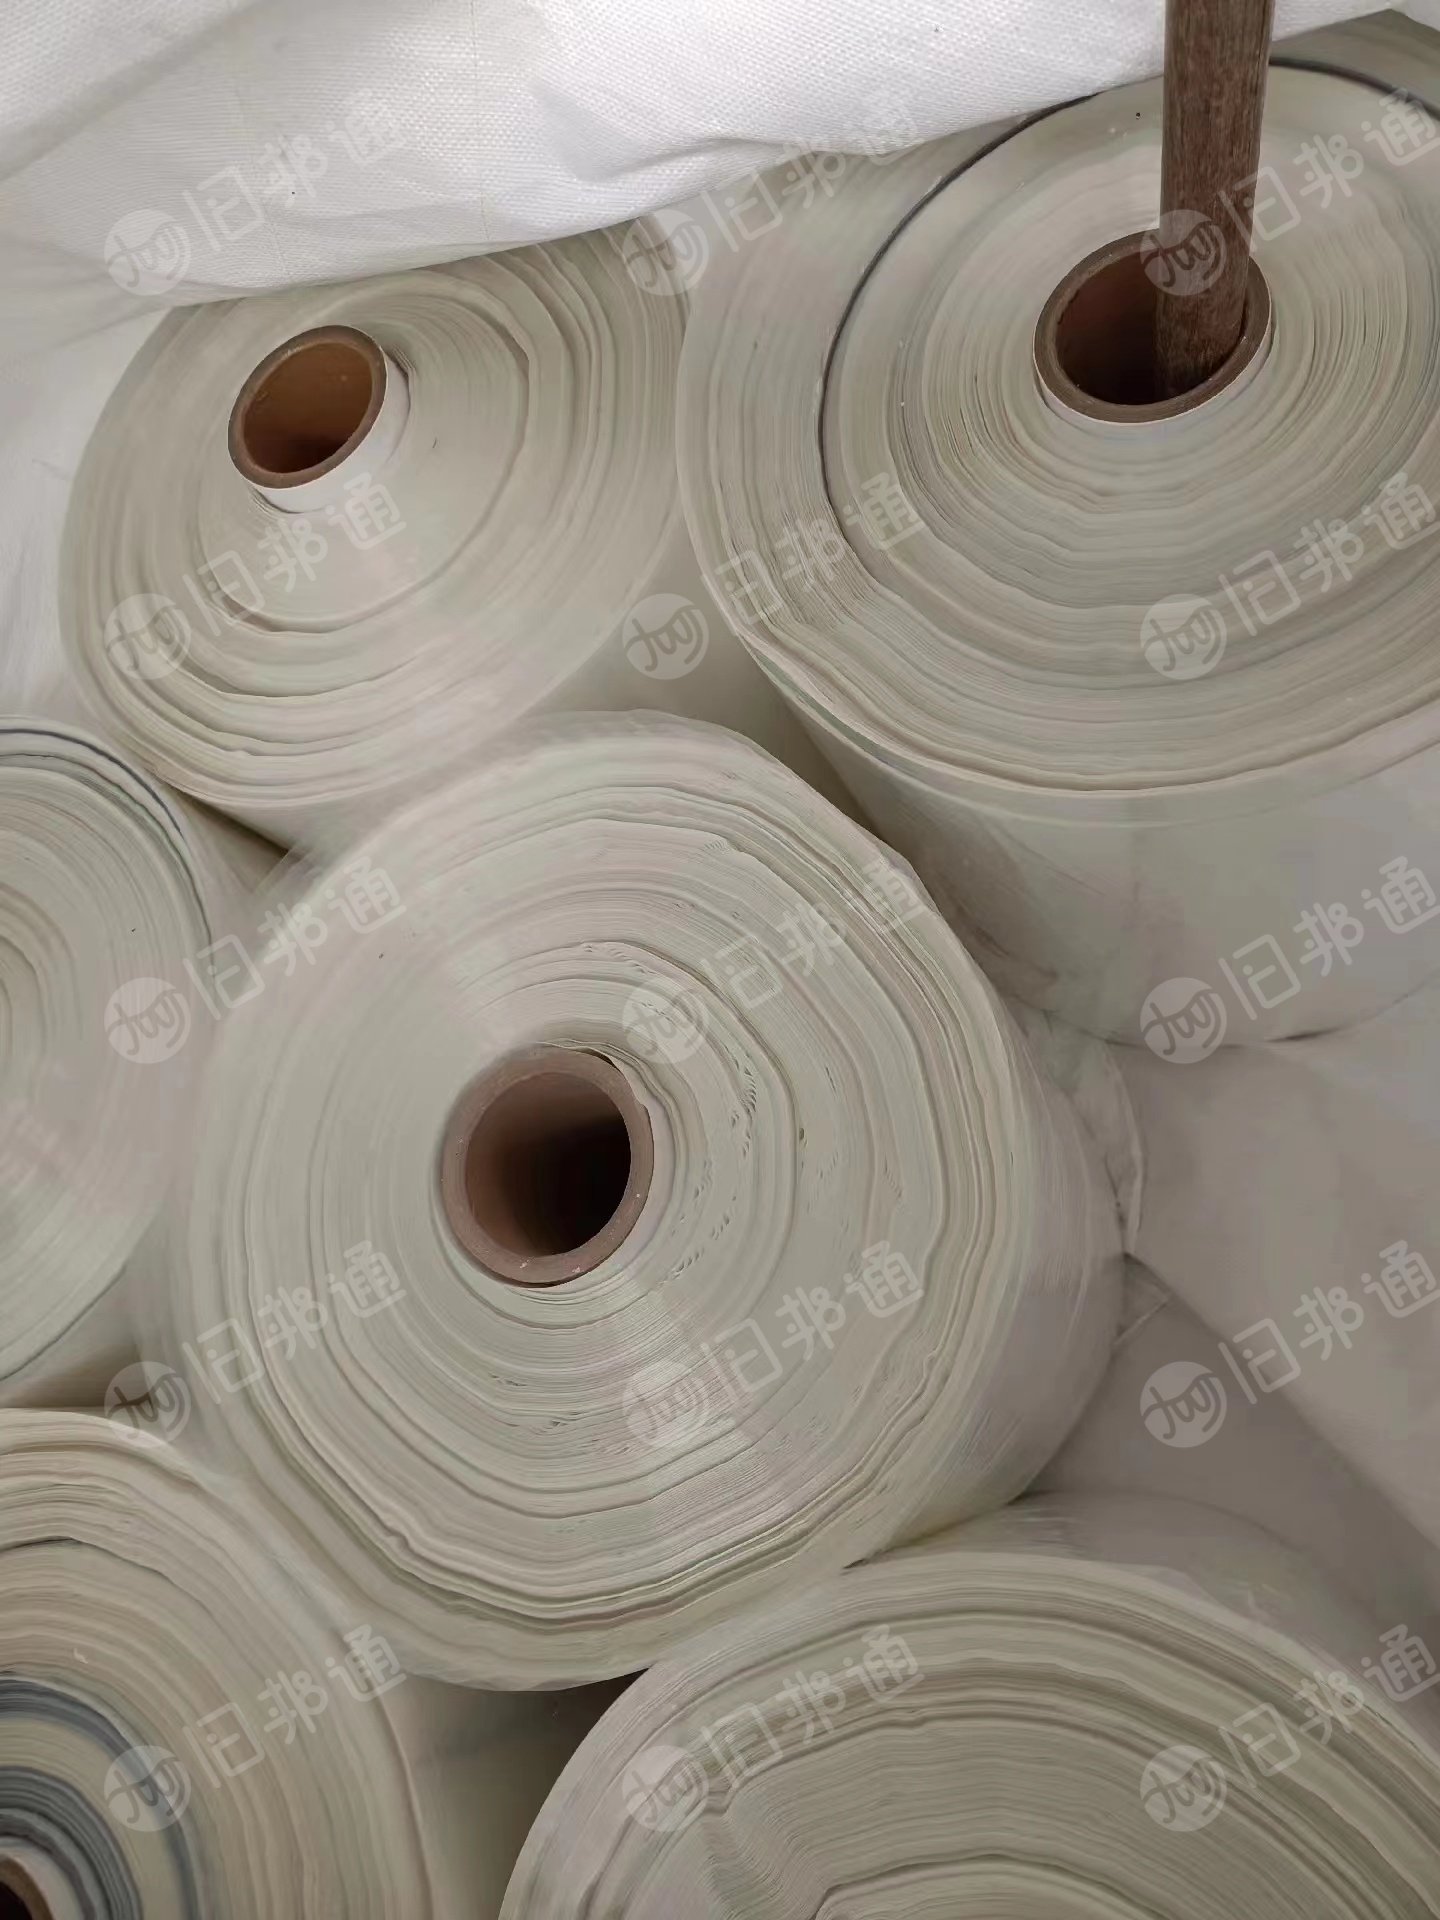 出售pet日本水洗陶瓷膜，现货15吨左右，另出售2.5丝450的风吹料台湾的陶瓷膜，现货10吨左右